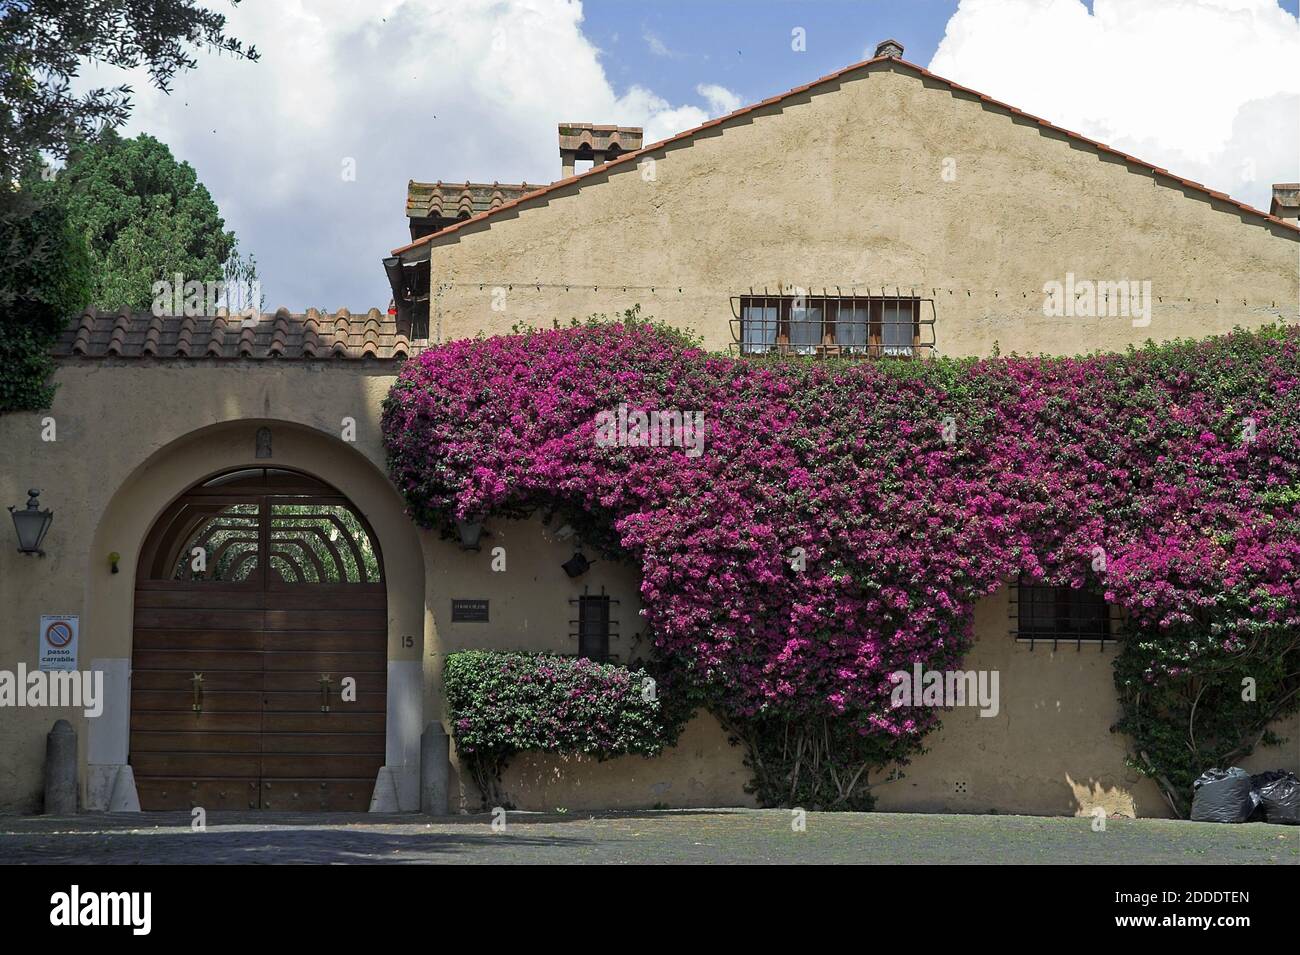 Roma ROM, Italie, Italie; la façade du bâtiment est recouverte de bougainvilliers violets. Die Fassade des Gebäudes ist mit lila Bougainvillea bedeckt Banque D'Images